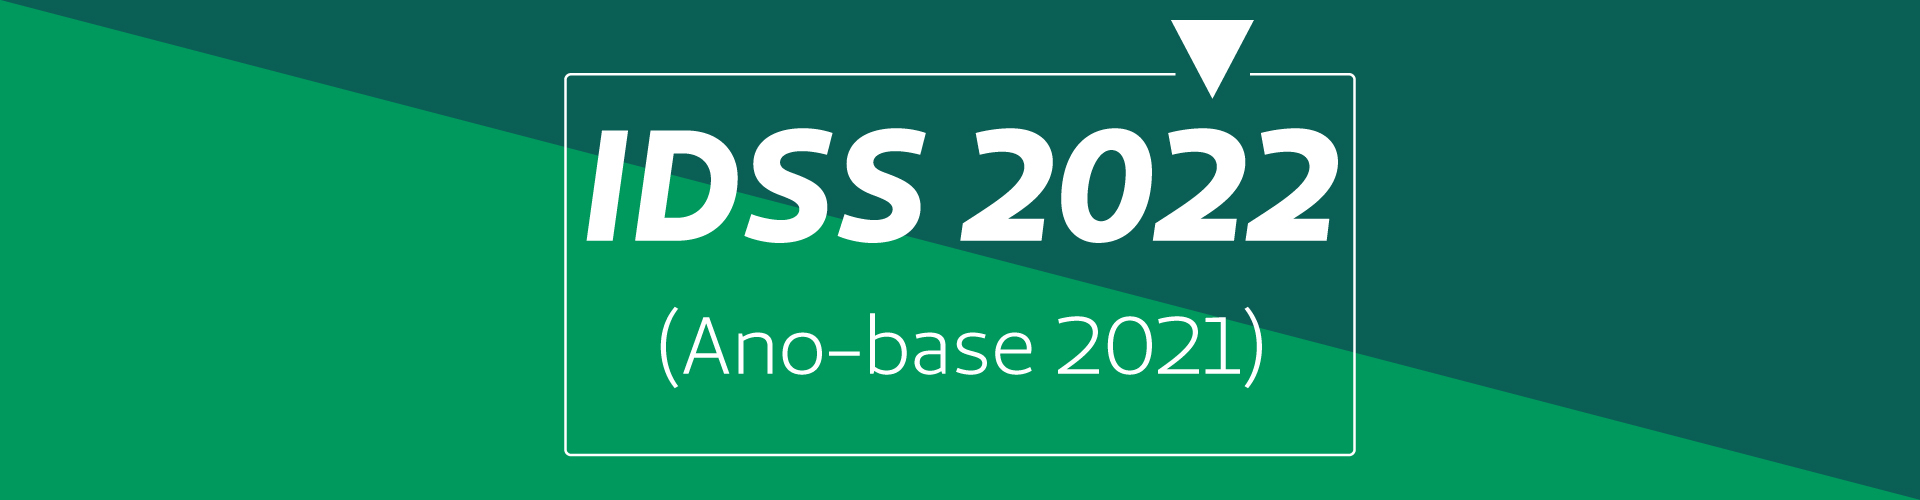 Índice de Desempenho da Saúde Suplementar 2022 (ano-base 2021)